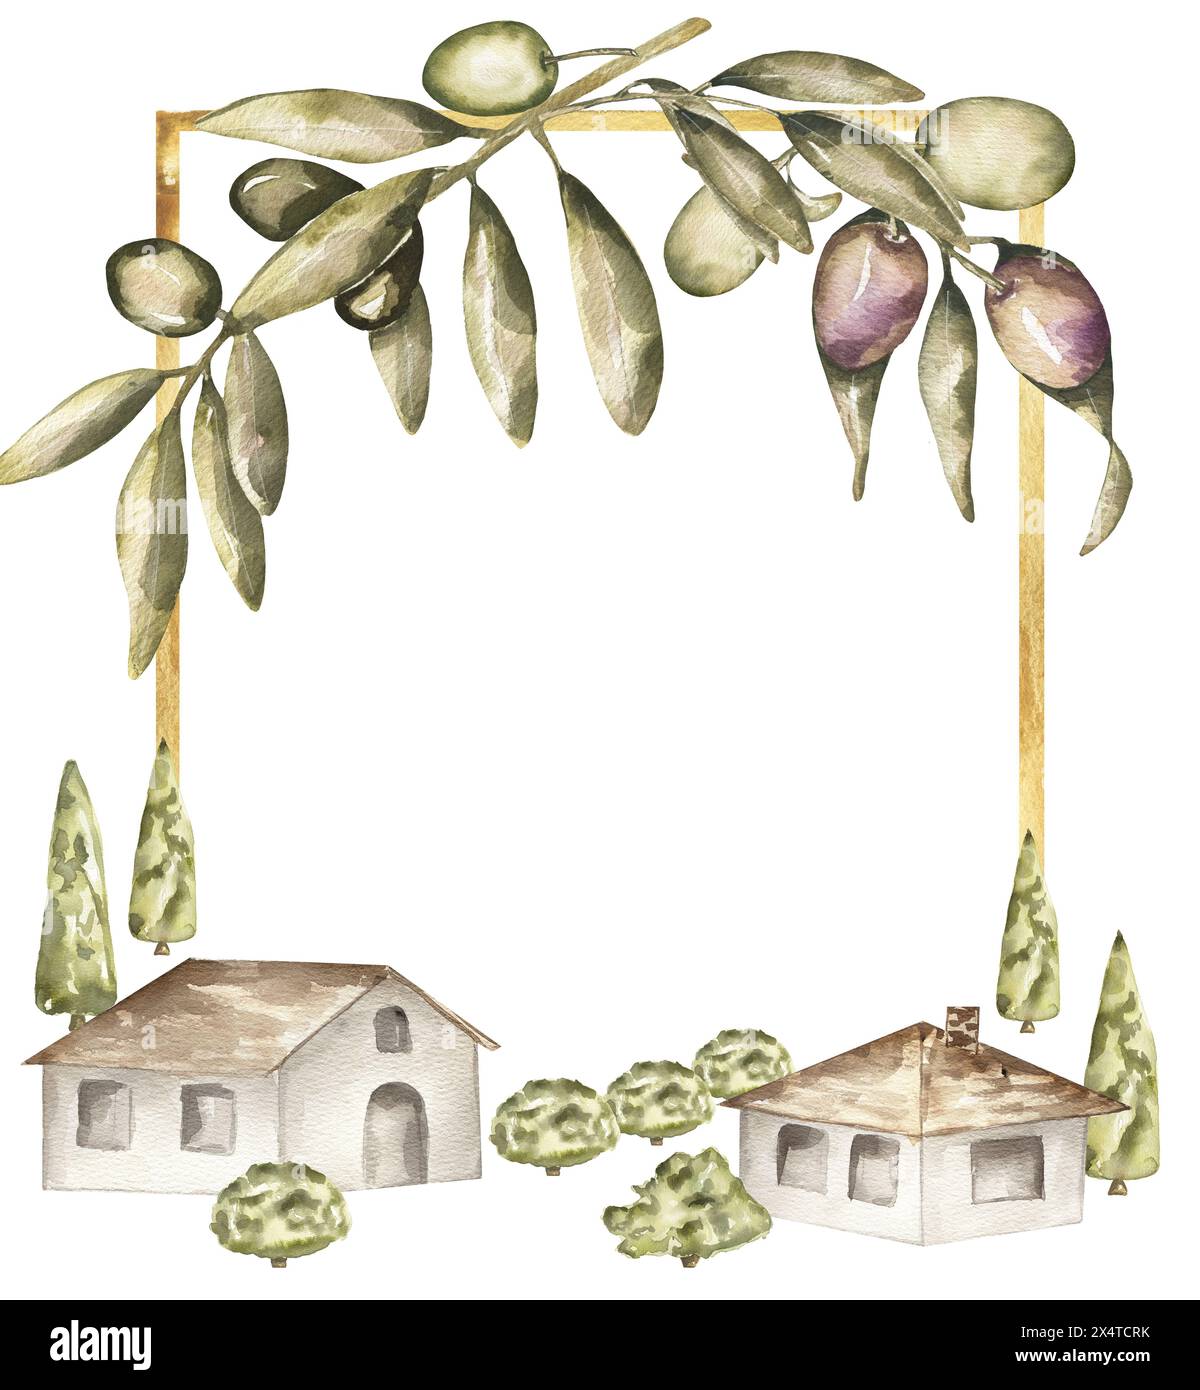 Aquarellfarben Olivenpflanzen und Dorfhäuser und Bäume Rahmen Clipart. Isolierte handgezeichnete botanische Illustration. Kann für Karten, Embleme, Logos und verwendet werden Stockfoto